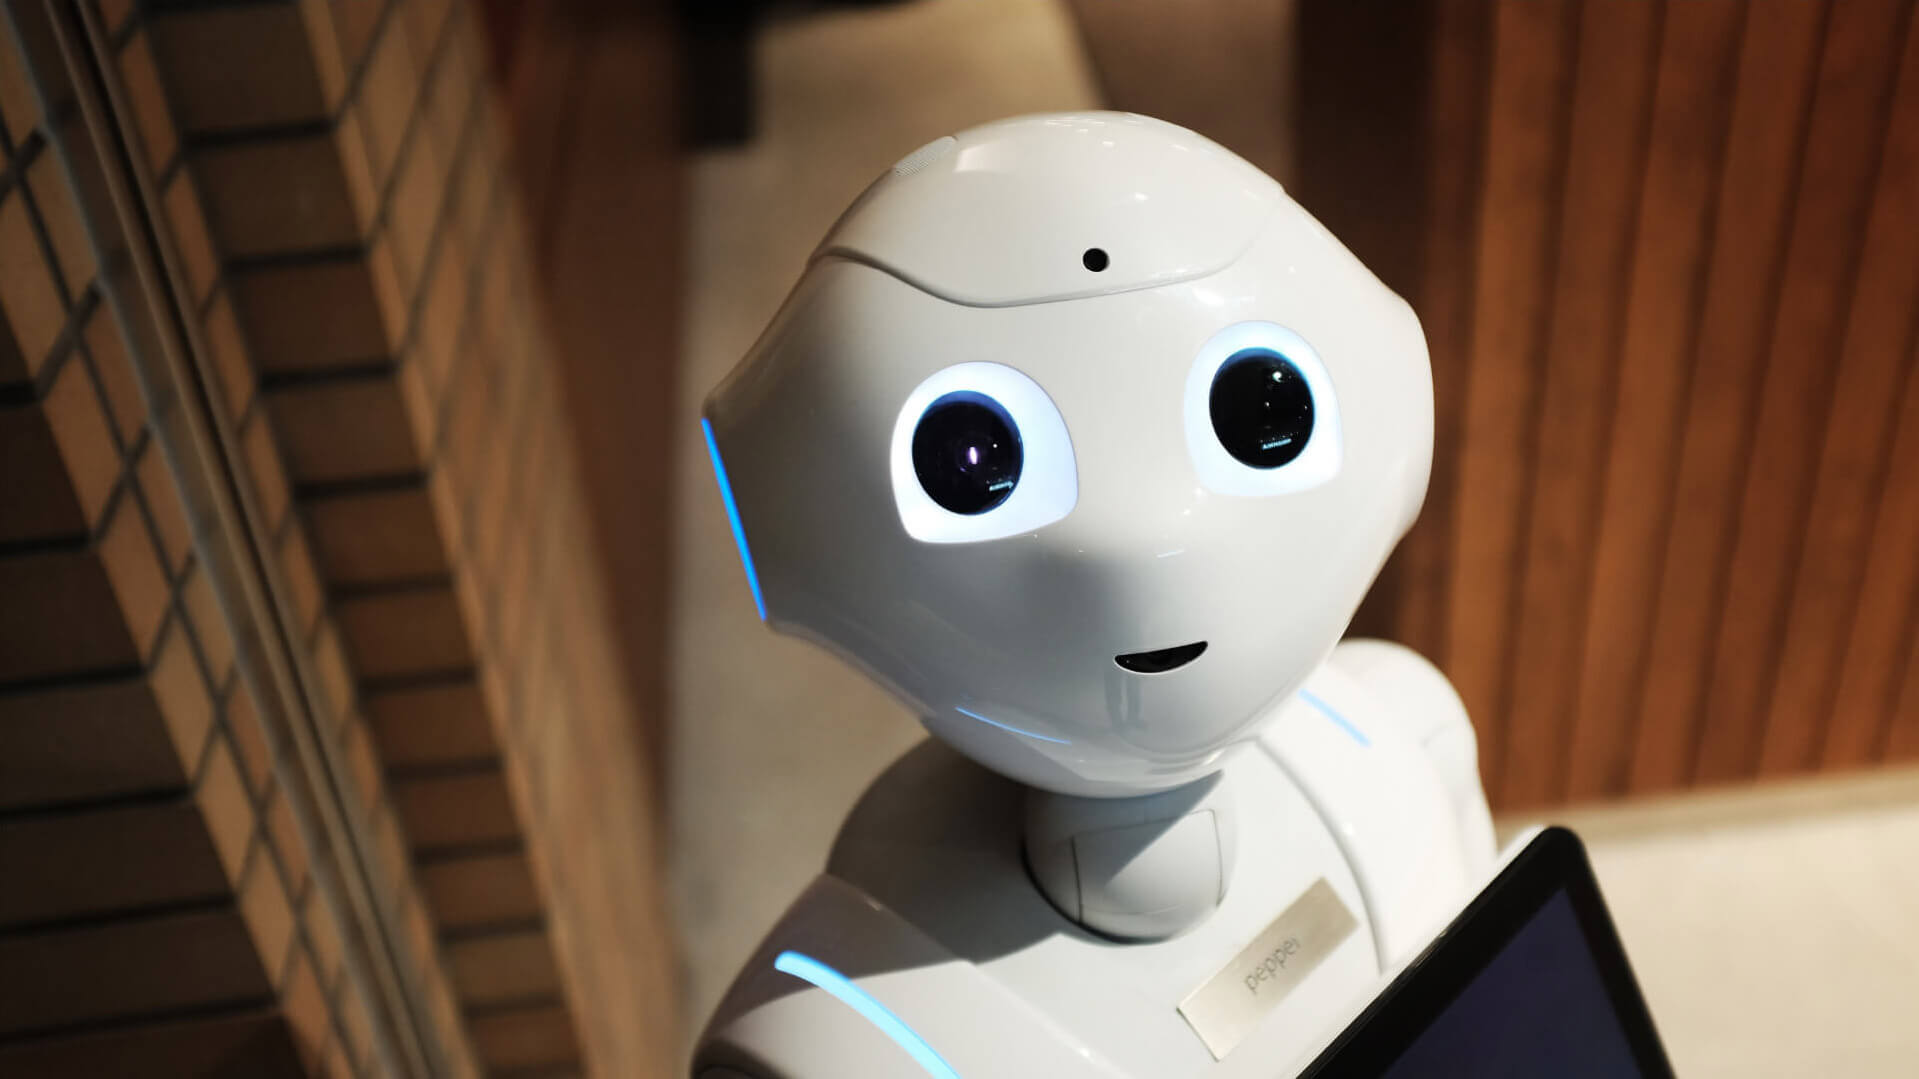 Image pour le header du billet de blogue « ChatGPT : révolution marketing à prévoir? » présentant un robot pour donner un visage à l’intelligence artificielle.